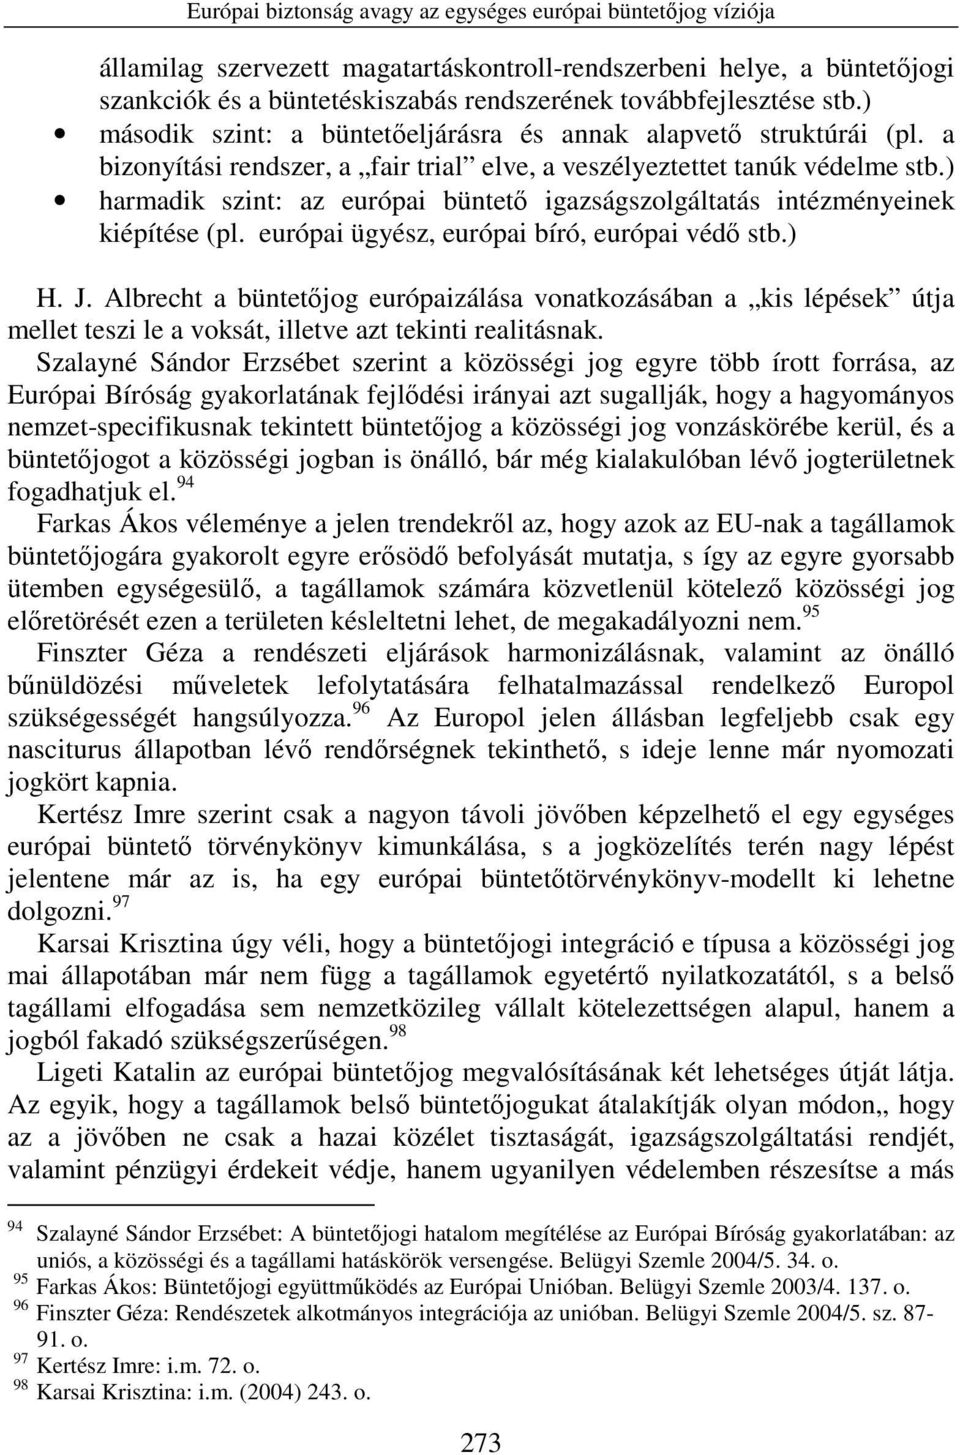 ) harmadik szint: az európai büntetı igazságszolgáltatás intézményeinek kiépítése (pl. európai ügyész, európai bíró, európai védı stb.) H. J.